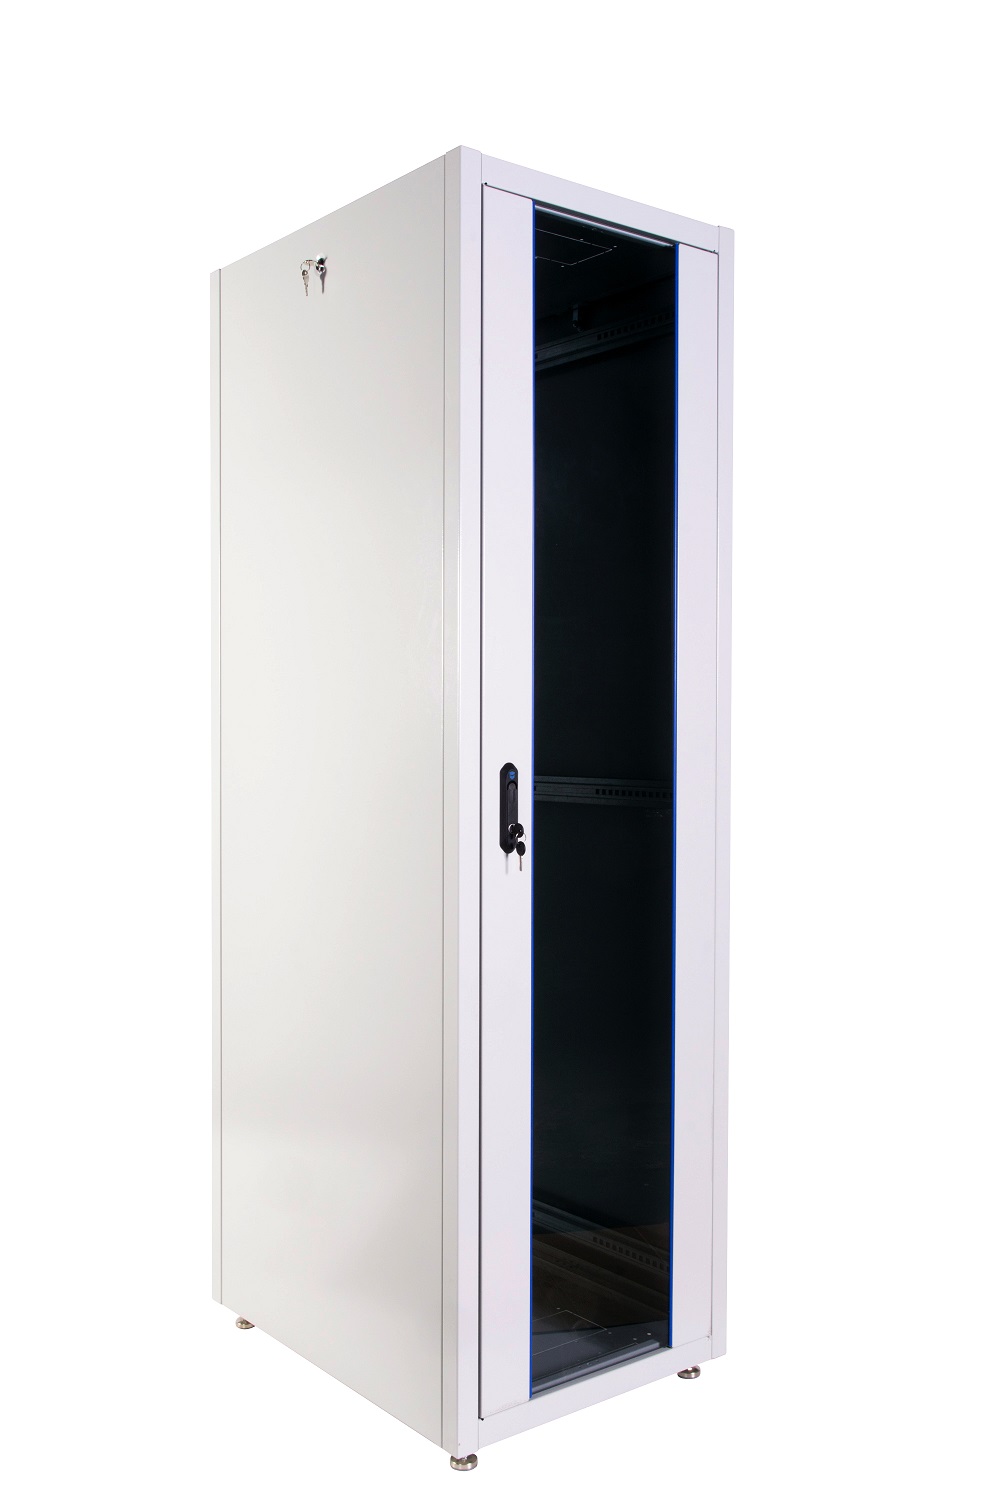  Купить Шкаф телекоммуникационный напольный ЭКОНОМ 42U (600 × 1000) дверь стекло, дверь металл